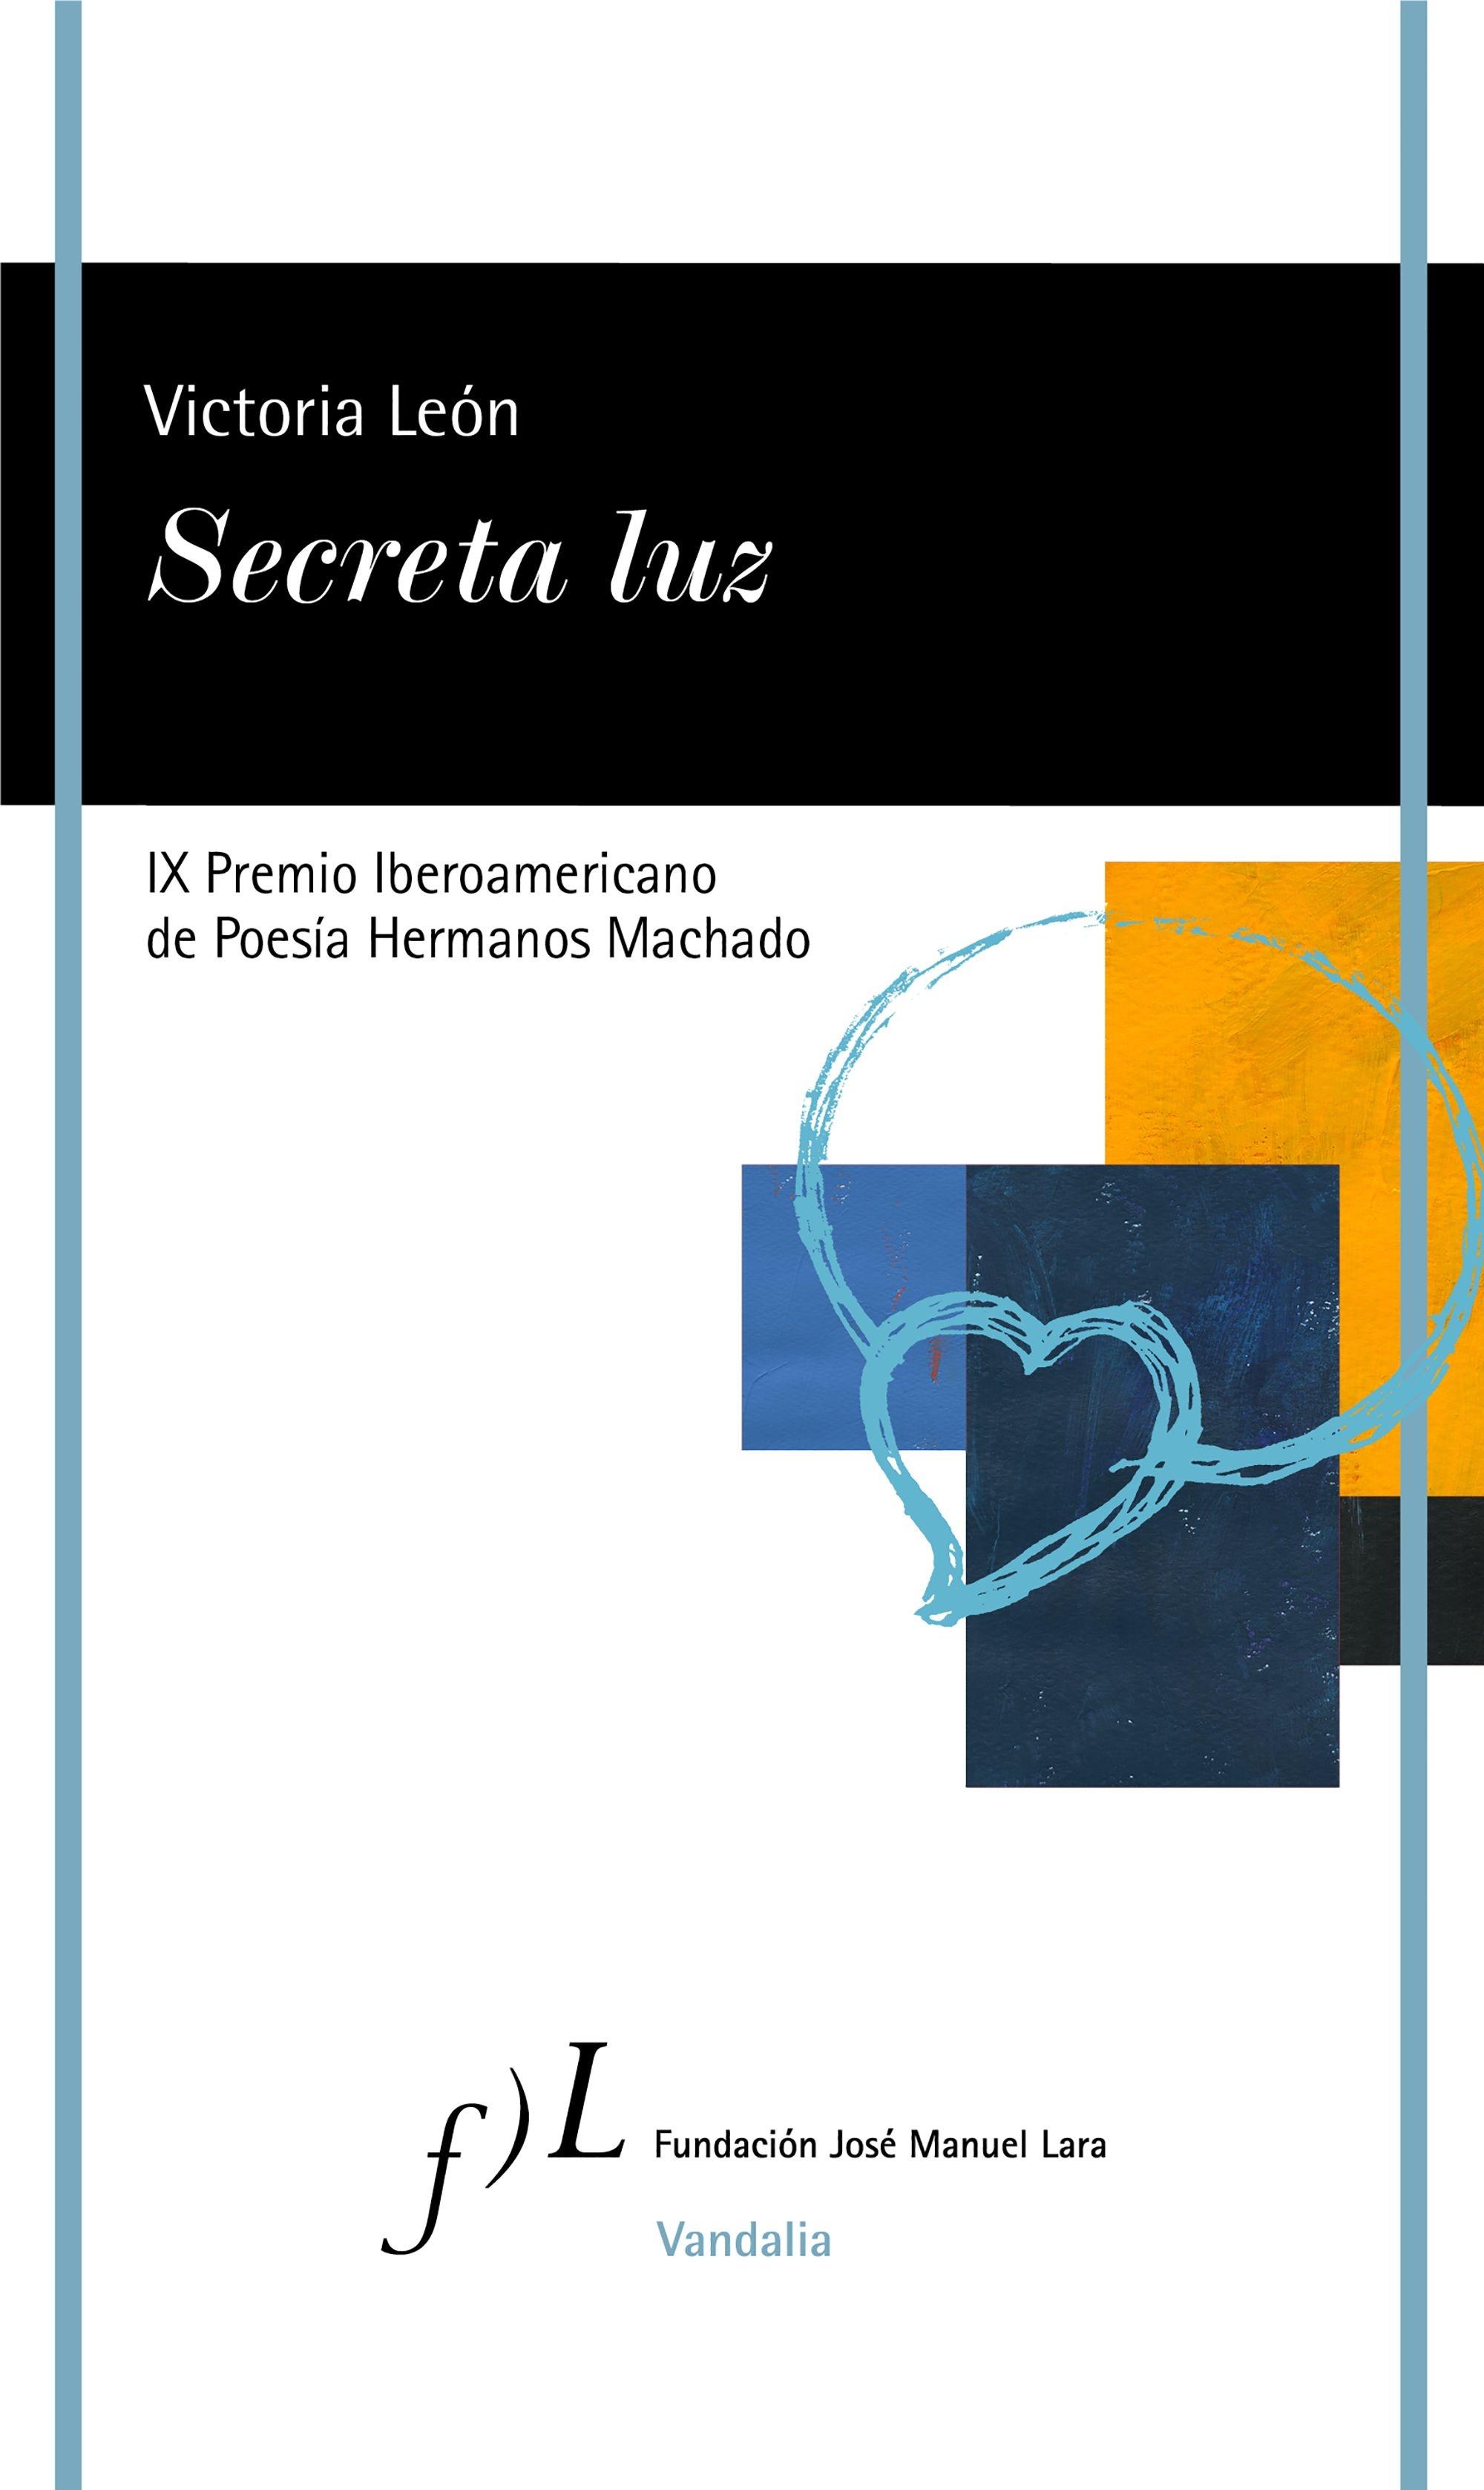 Secreta Luz "Ix Premio Iberoamericano de Poesía Hermanos Machado". 